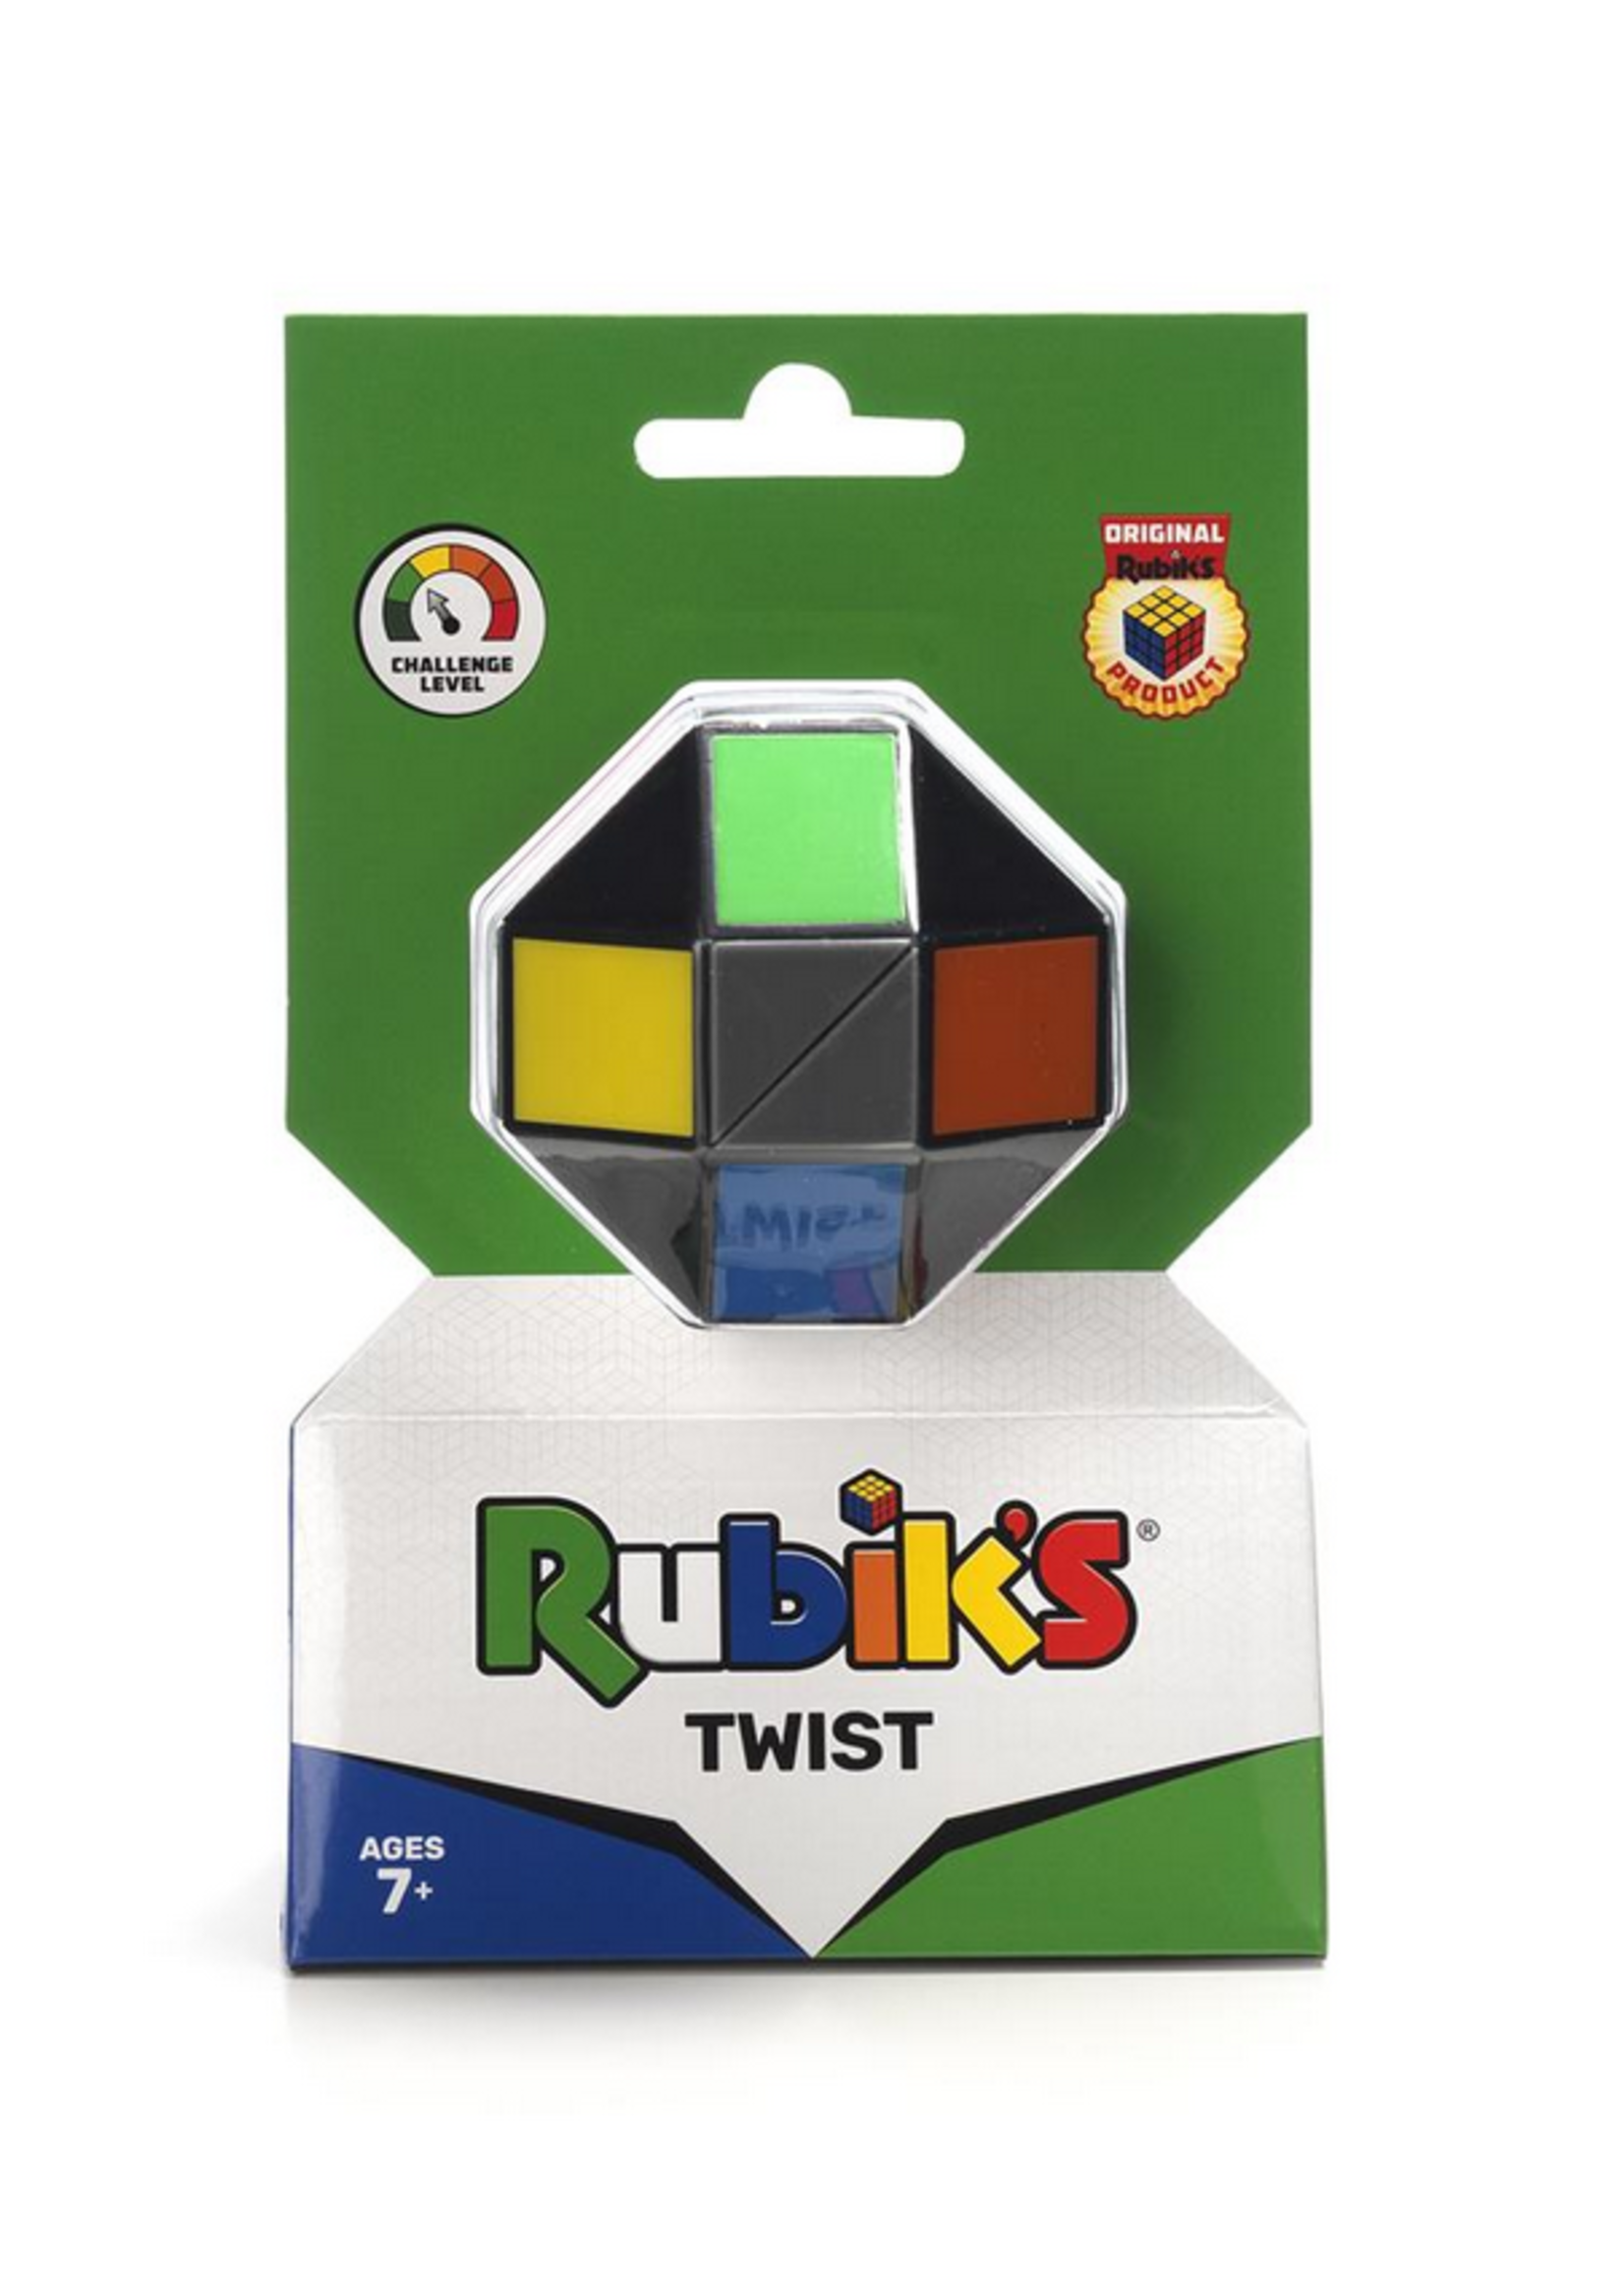 Rubik's Rubiks twist